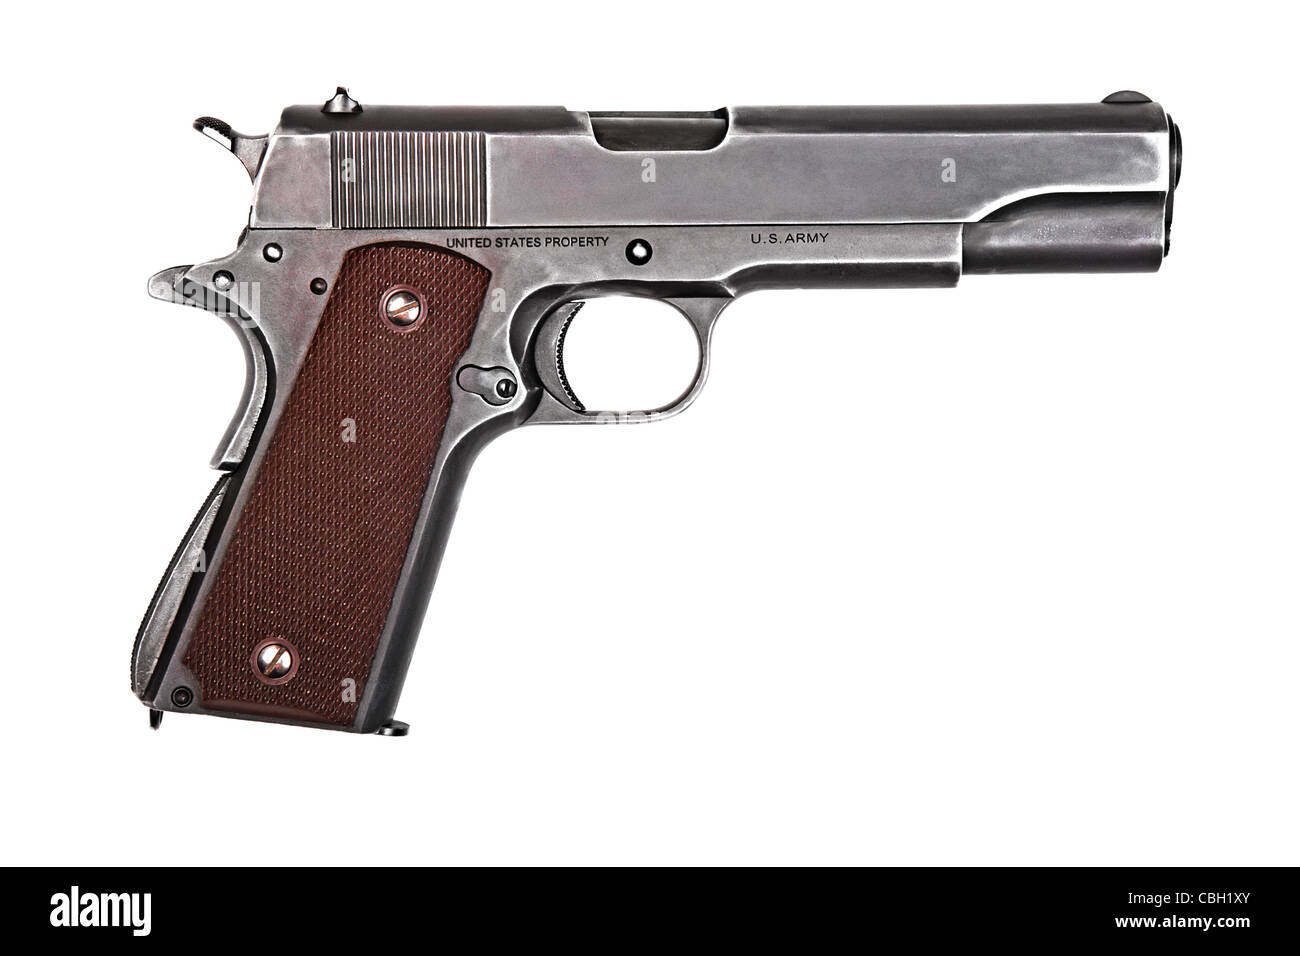 Il leggendario U.S. Army revolver Colt 1911A1 isolato su sfondo bianco. Modello militare (colore grigio). Foto Stock